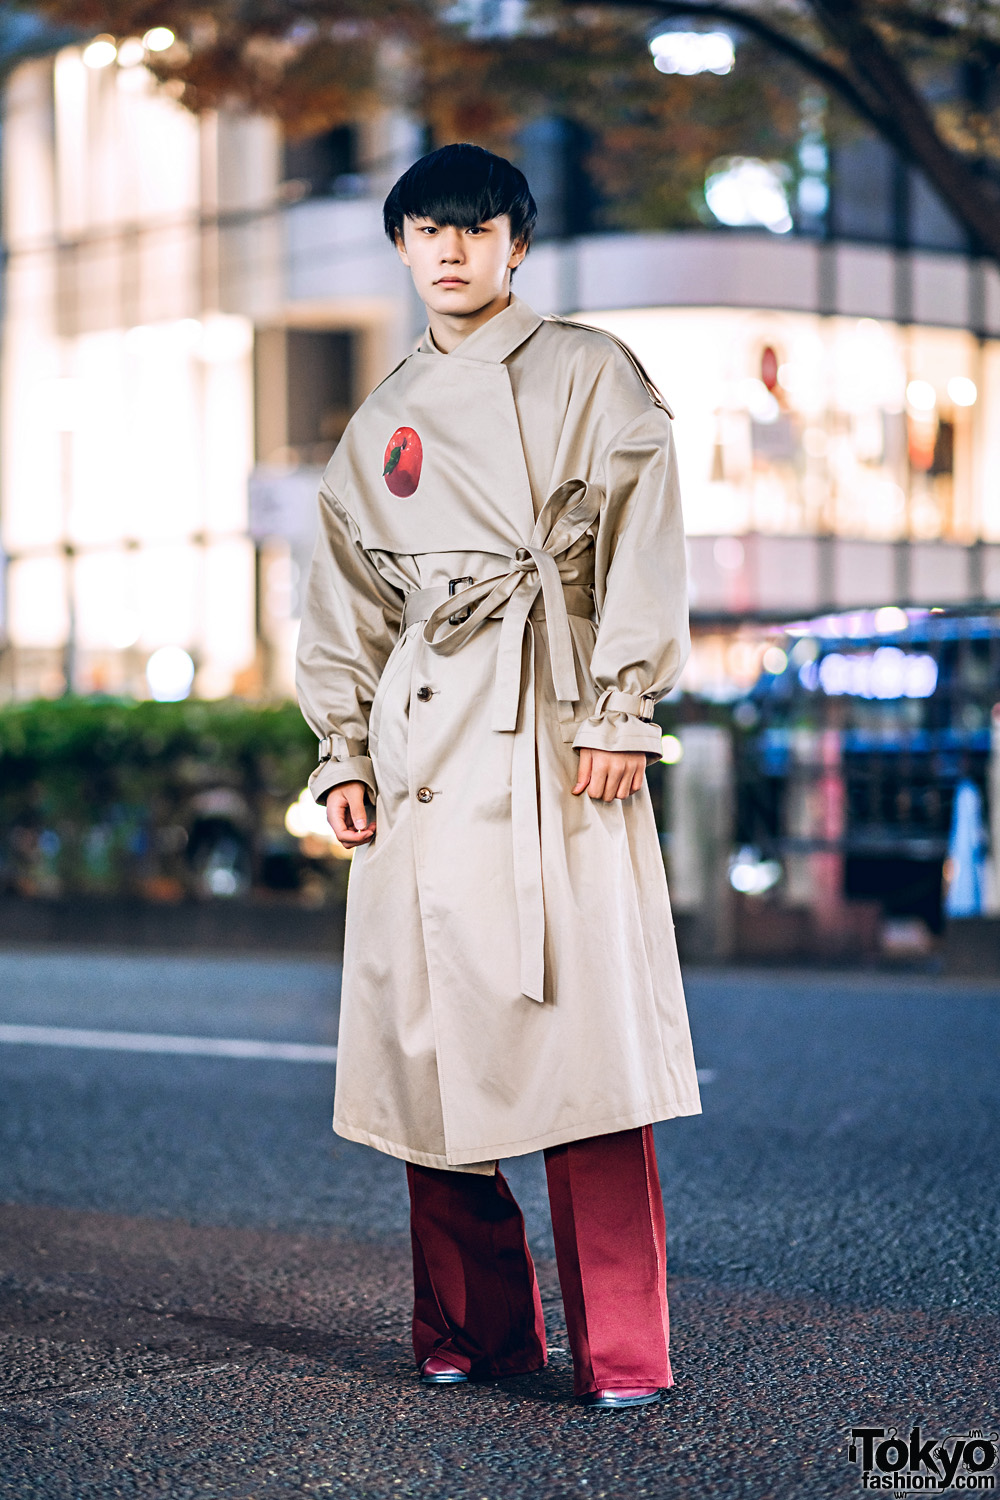 Menswear Winter Street Style w/ Blunt Bob, Oversized Keisuke